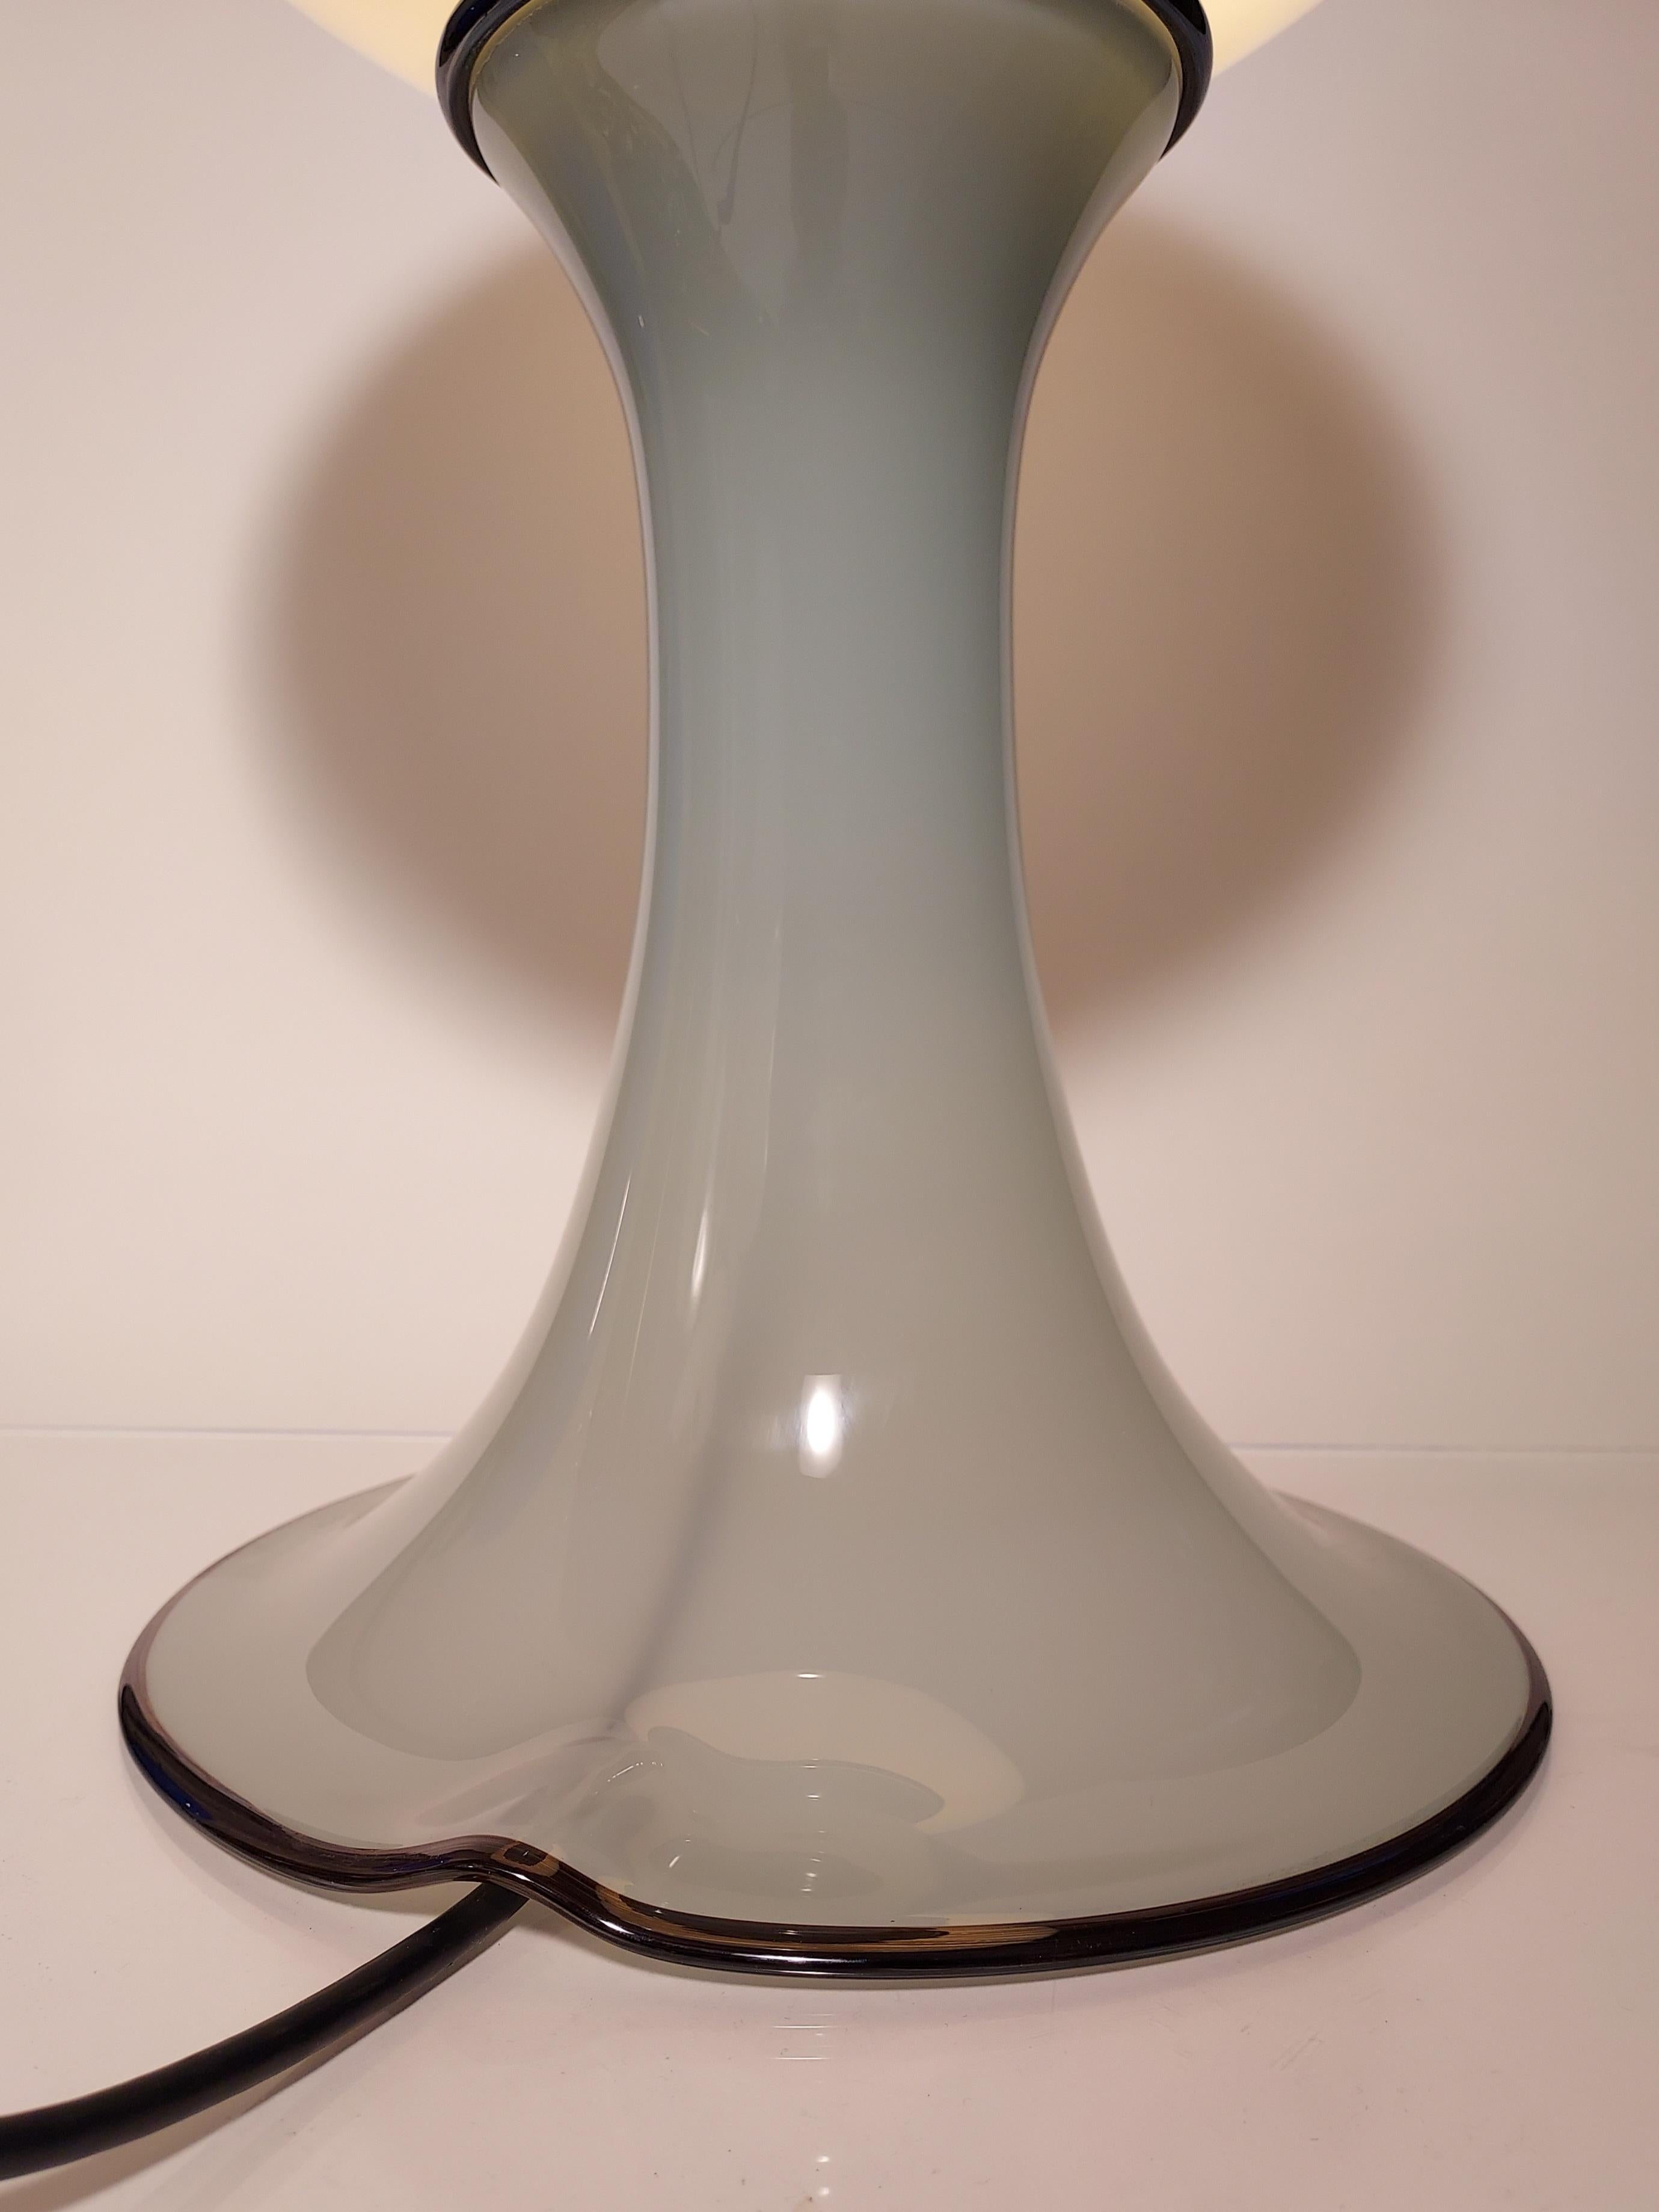 Die Futura Table Lamps sind handgefertigte Glasleuchten, die eine moderne Ästhetik mit minimalistischem Farbempfinden verbinden und jedem Interieur eine futuristische Note verleihen. Jede Leuchte besteht aus zwei Teilen, die einen schlanken,